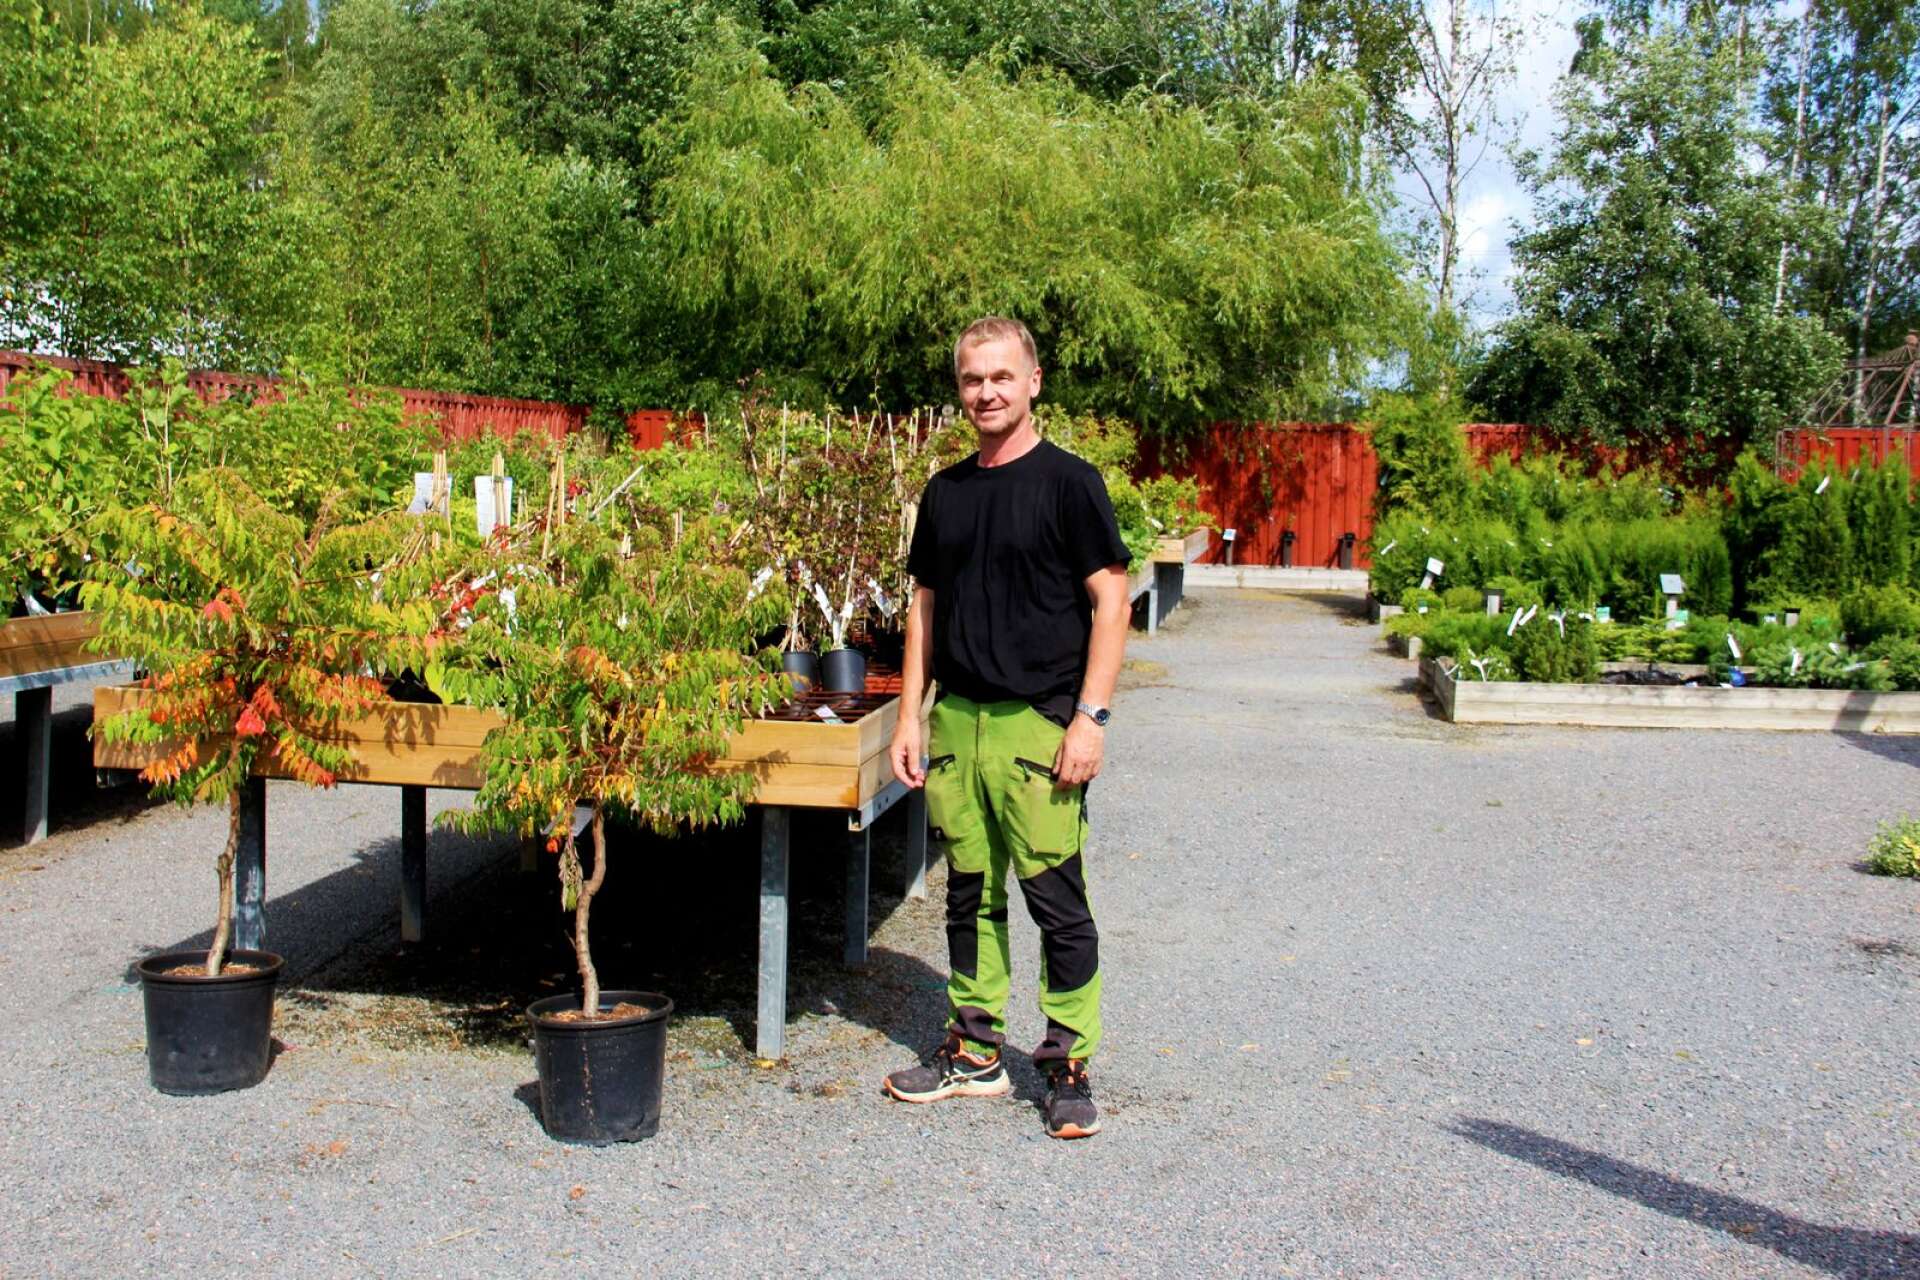 Hos Pomonadalens Handelsträdgård har Tord Andersson märkt av ett kraftigt uppsväng som håller i sig ännu, och det har varit tufft att få tag i nya växter för att kunna mäta sig med den stora efterfrågan.